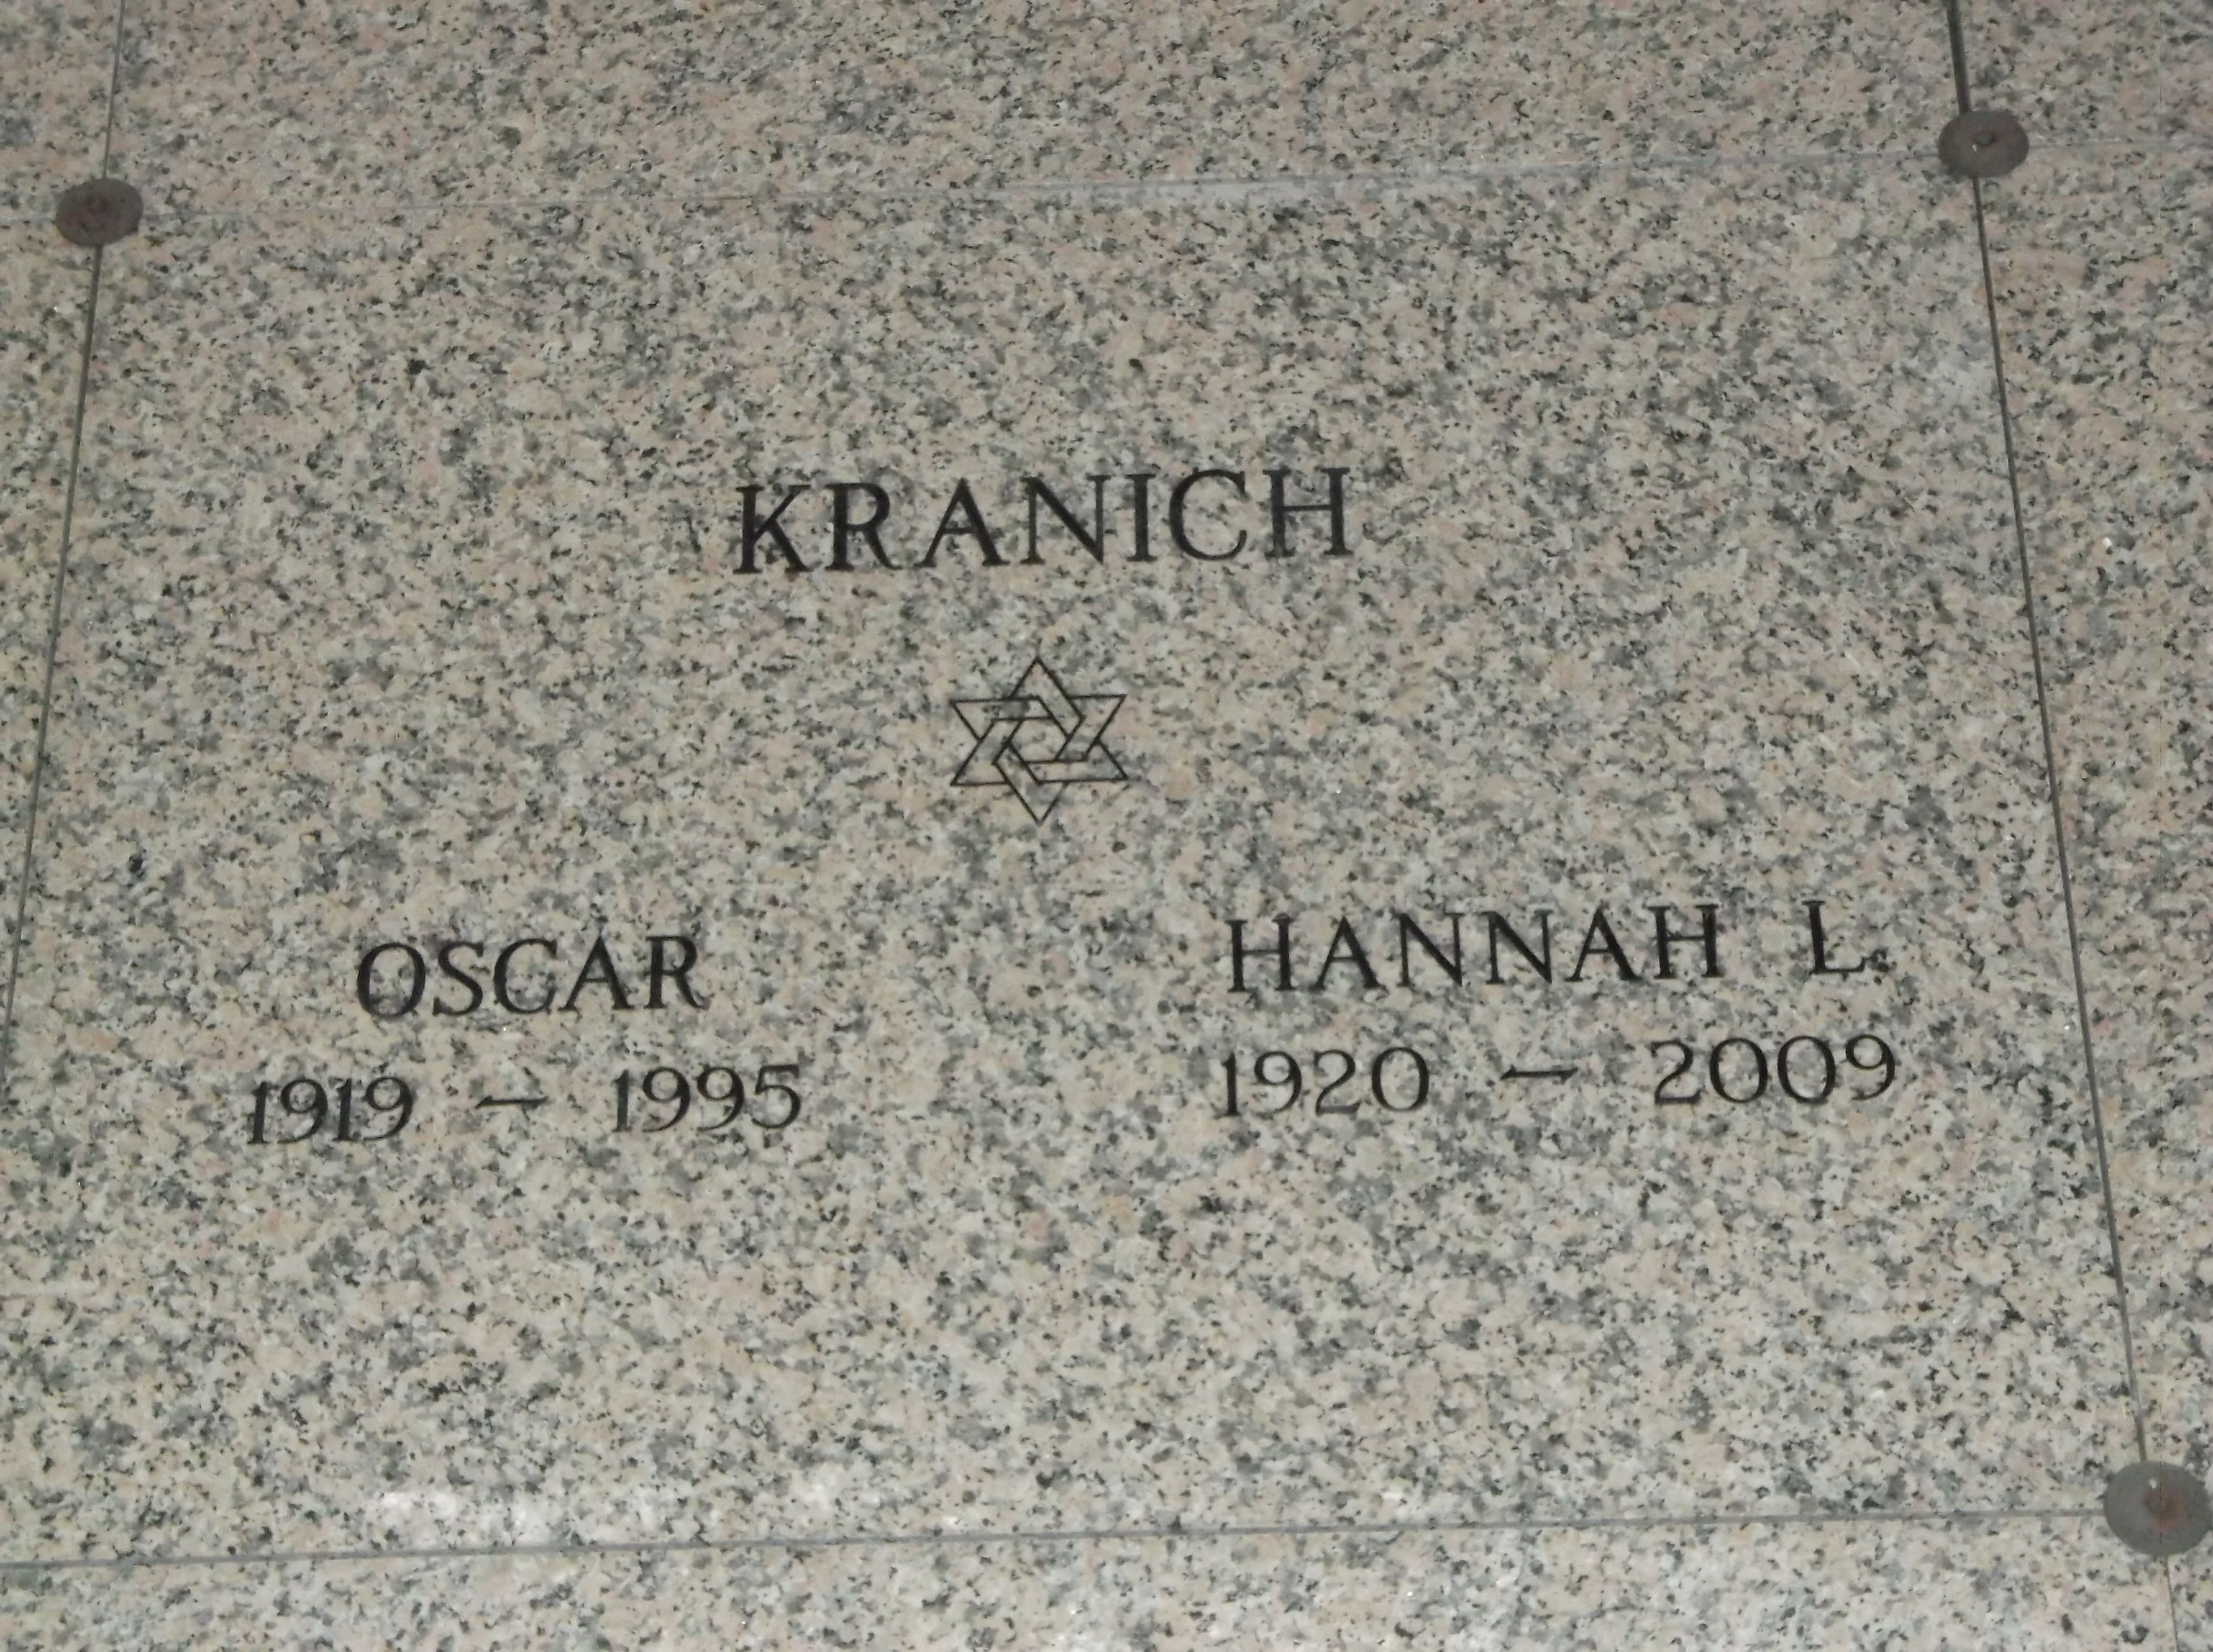 Oscar Kranich